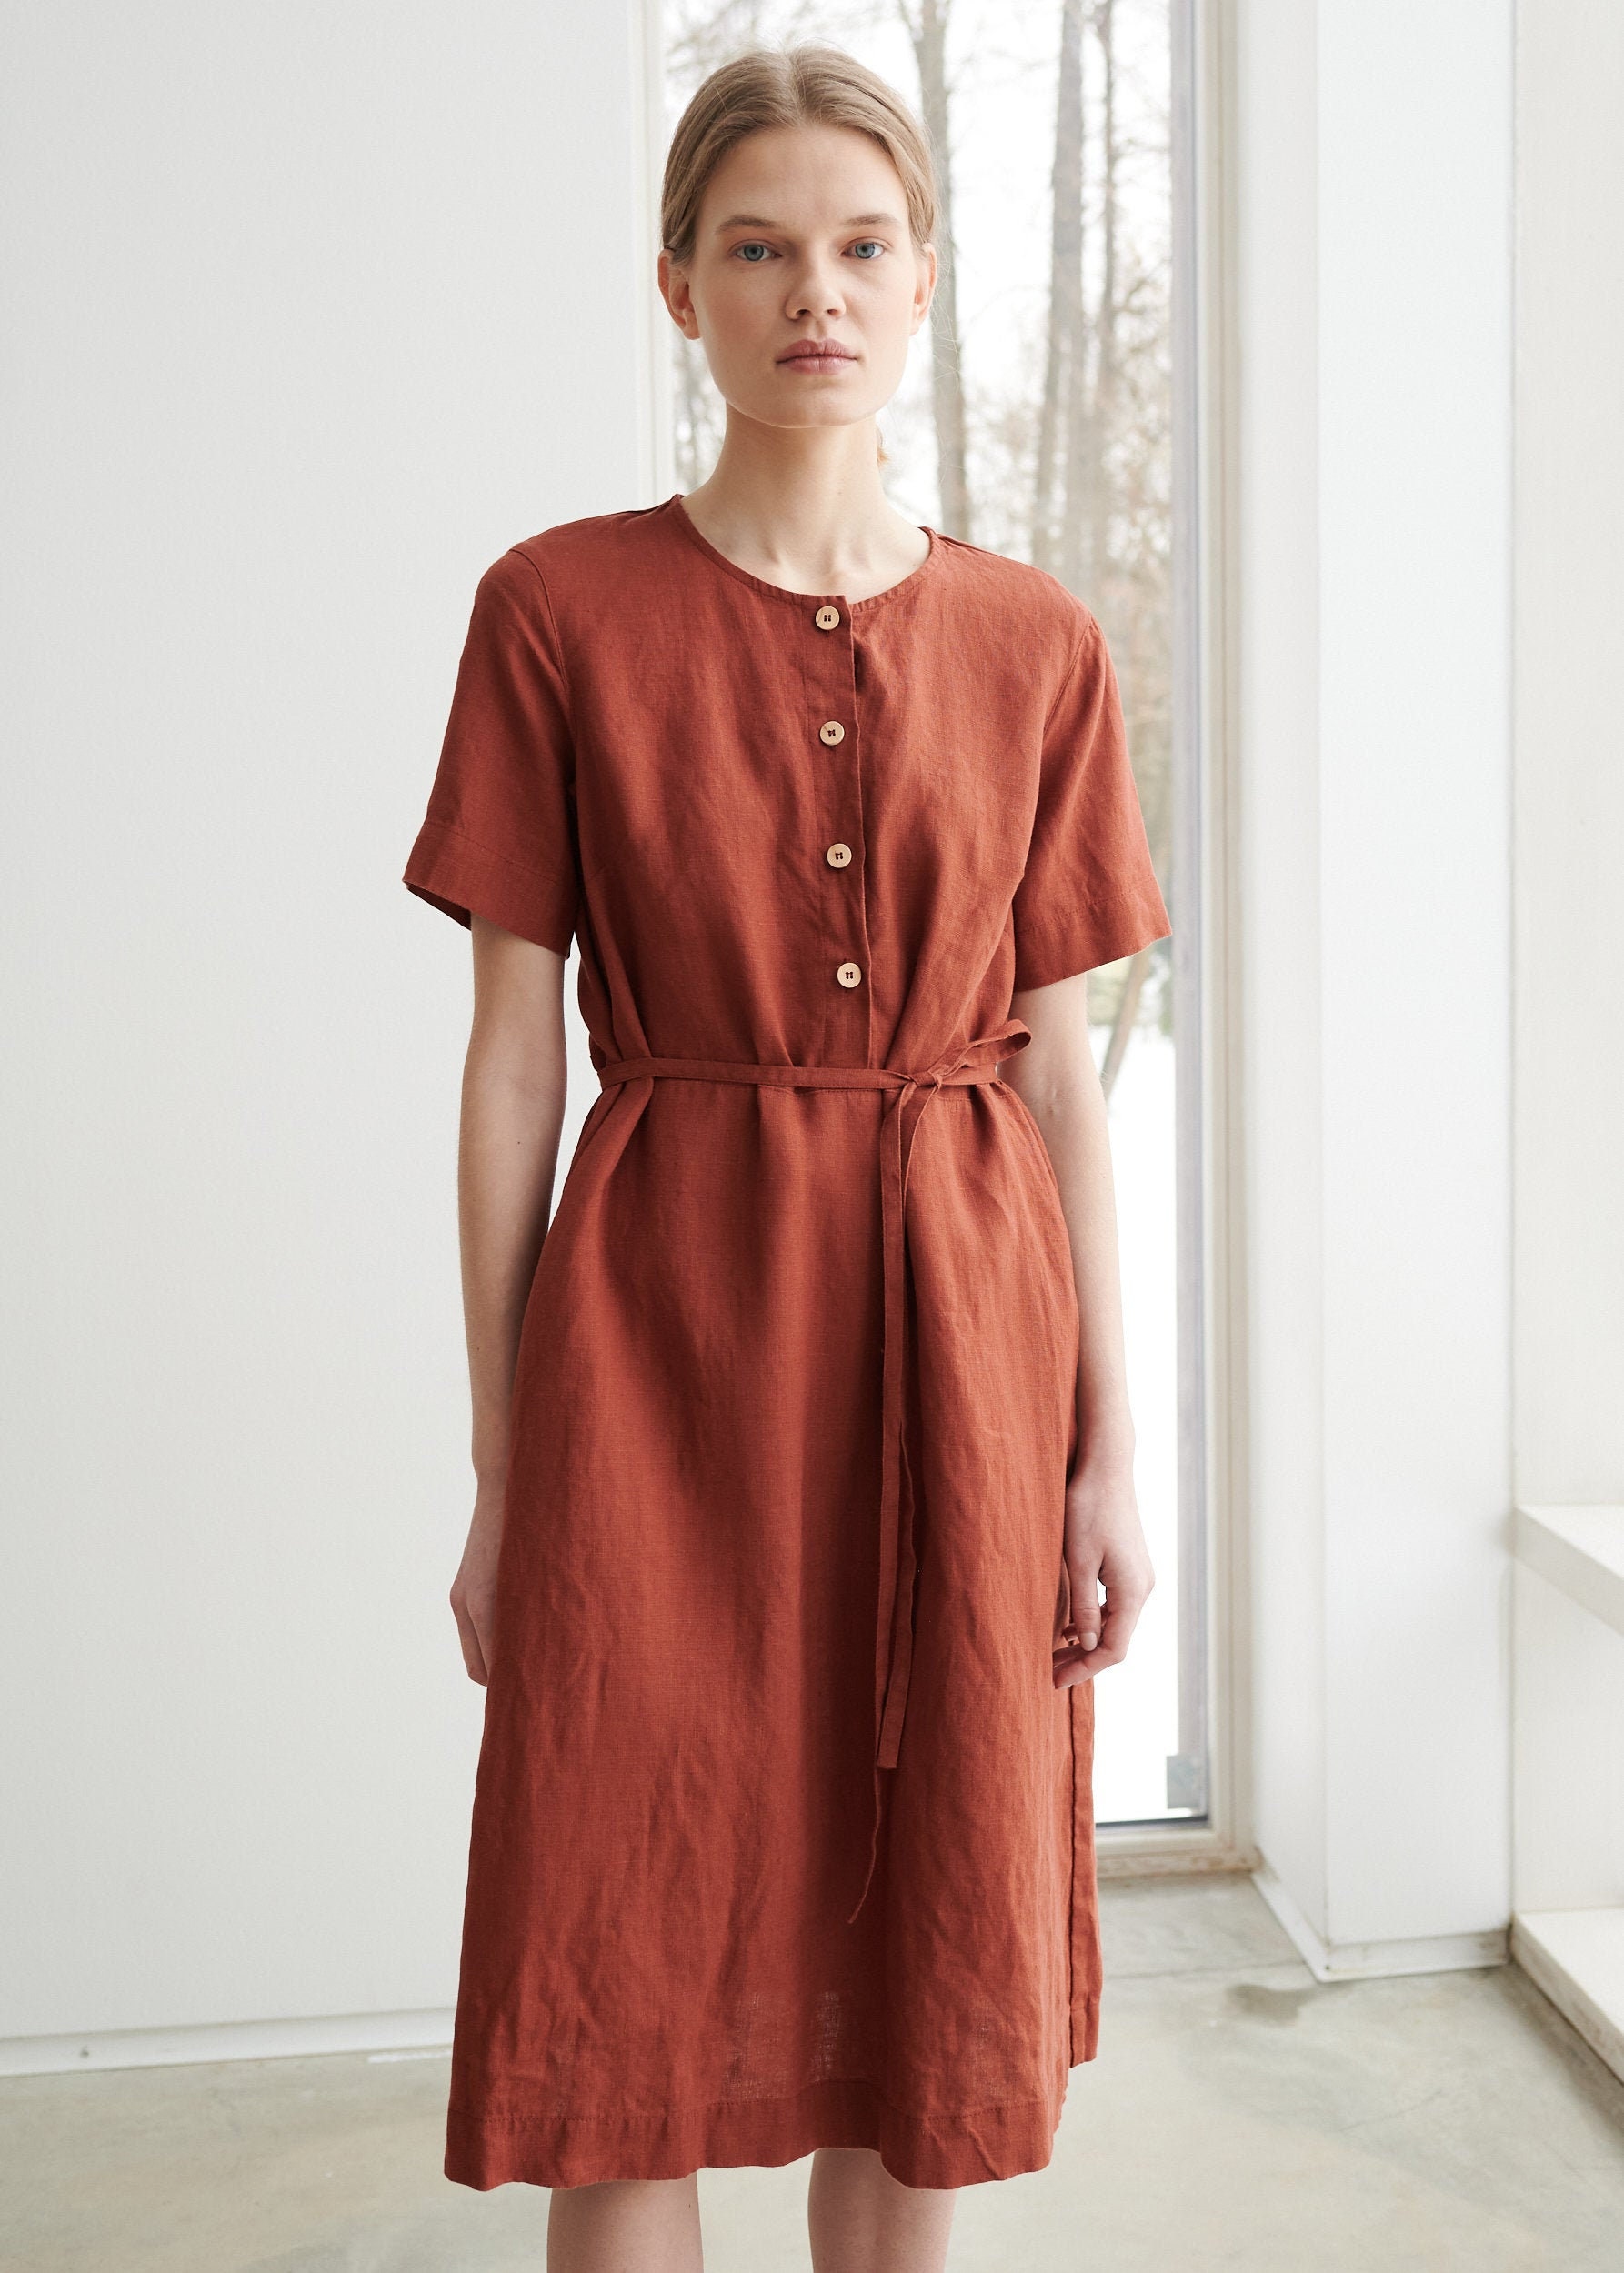 Bloom Terracotta Kleid - Schlichtes Leinenkleid Sommerkleid Alltagskleid Freizeitkleid Umstandskleid von Linenfox